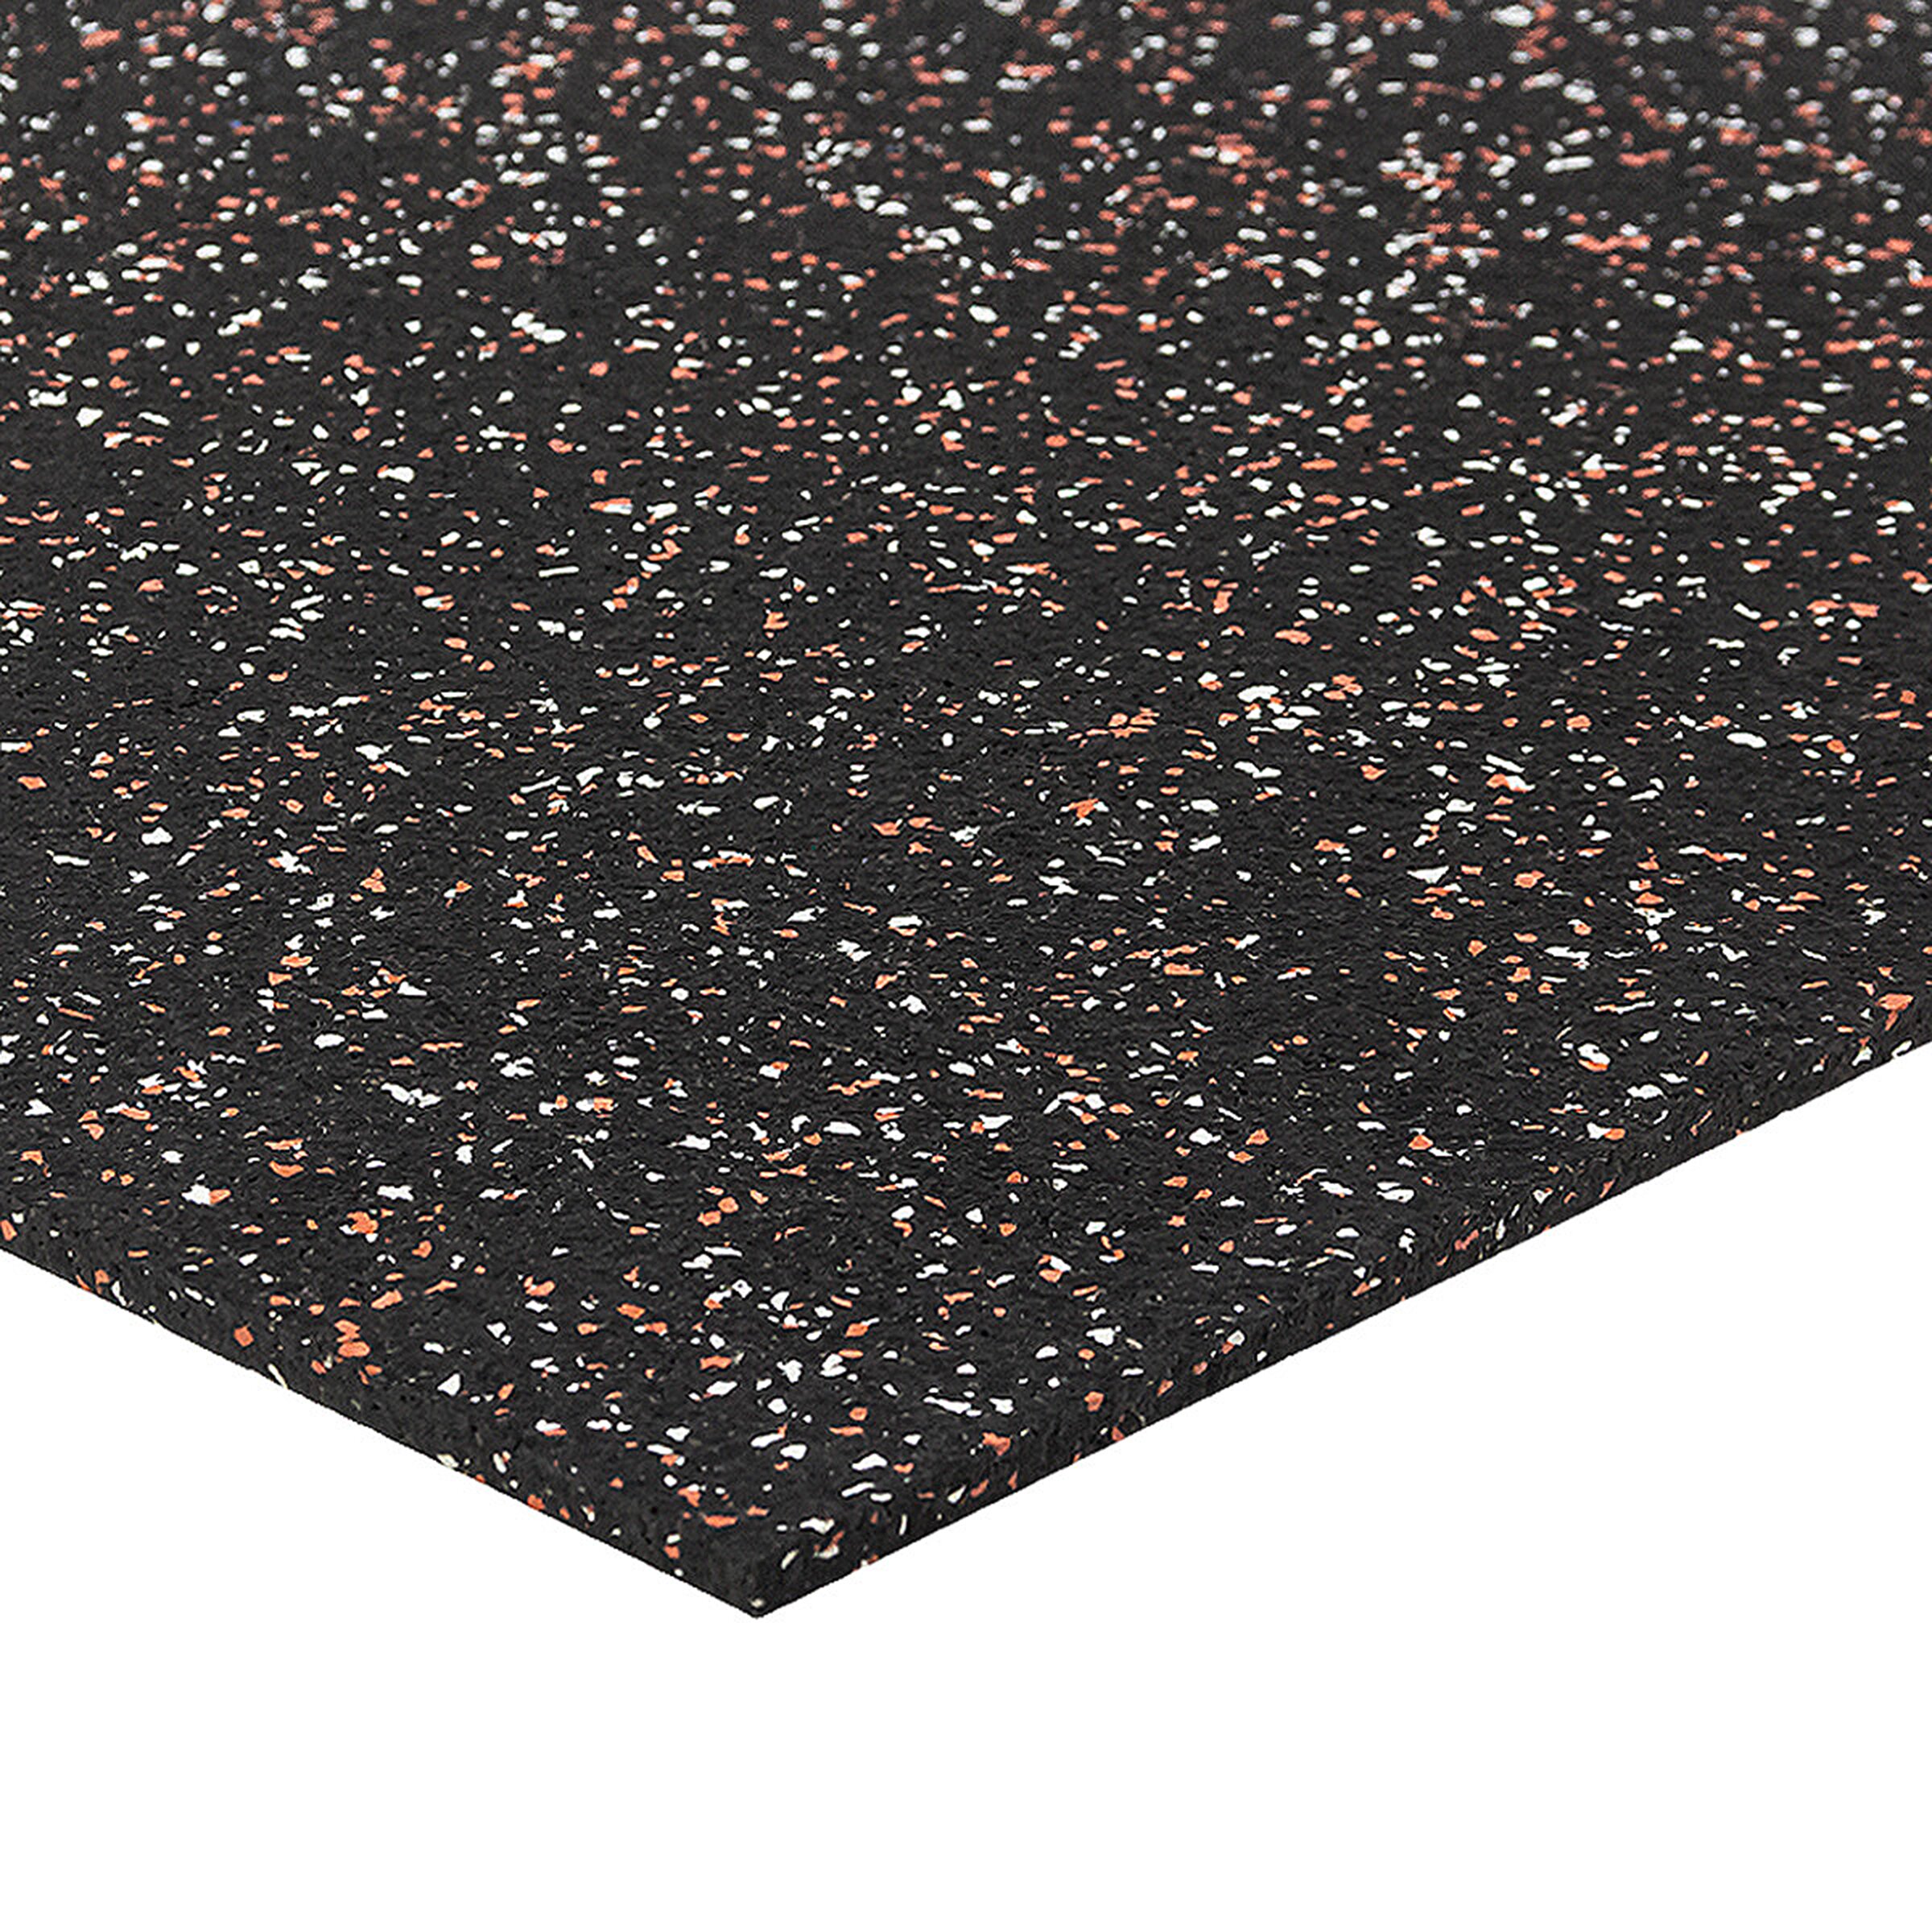 Čierno-bielo-červená podlahová guma (puzzle - okraj) FLOMA FitFlo SF1050 - dĺžka 100 cm, šírka 100 cm, výška 0,8 cm